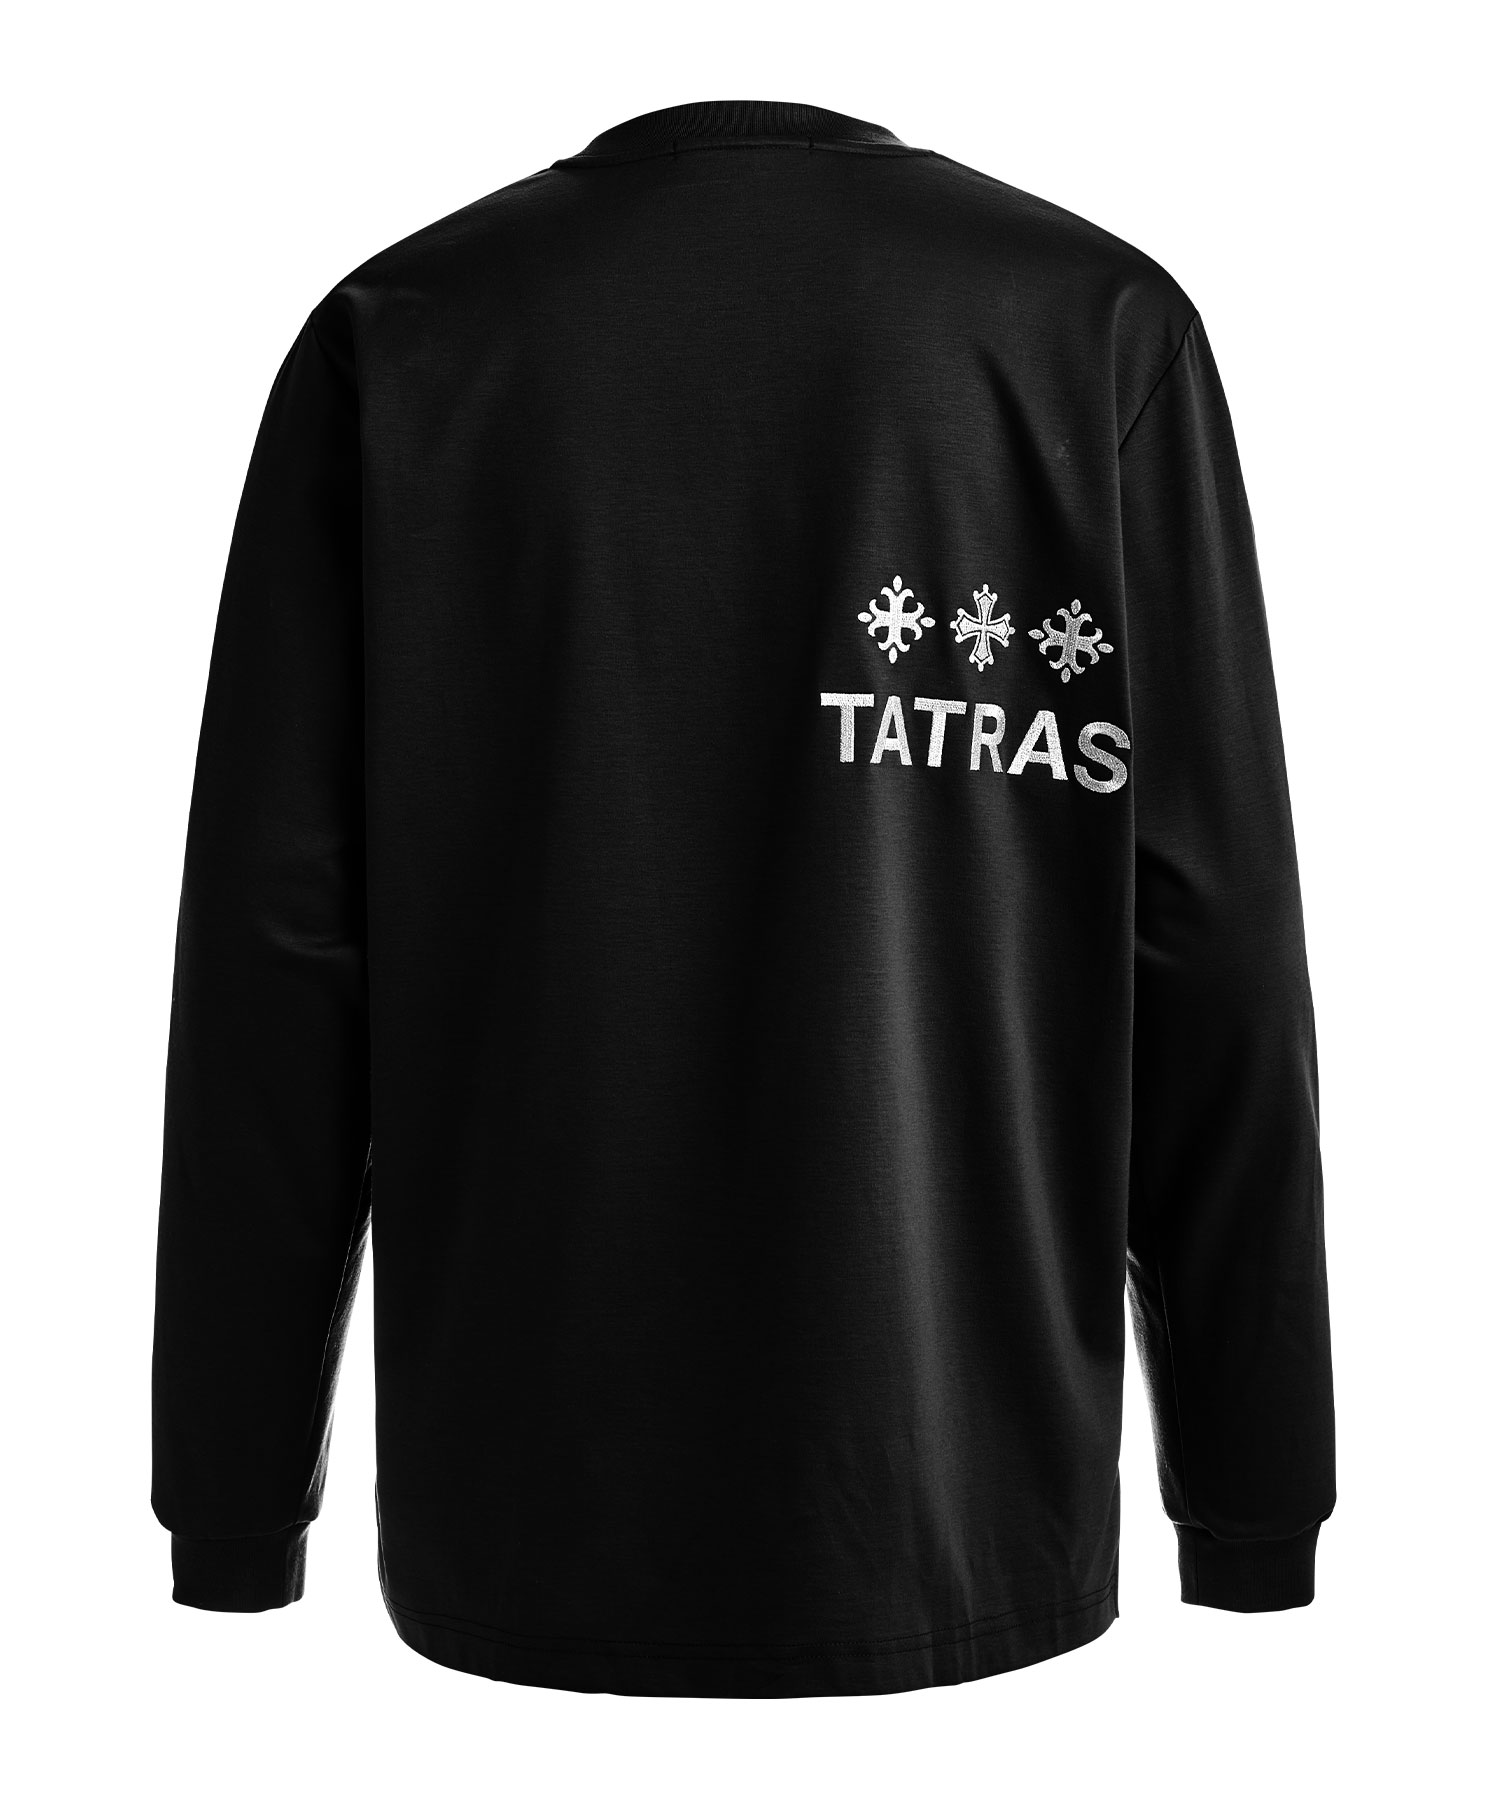 【公式】TATRAS (タトラス) BELECI ベレチ BLACK/01 サイズ:01,02,03,04 ロングスリーブカットソー メンズ